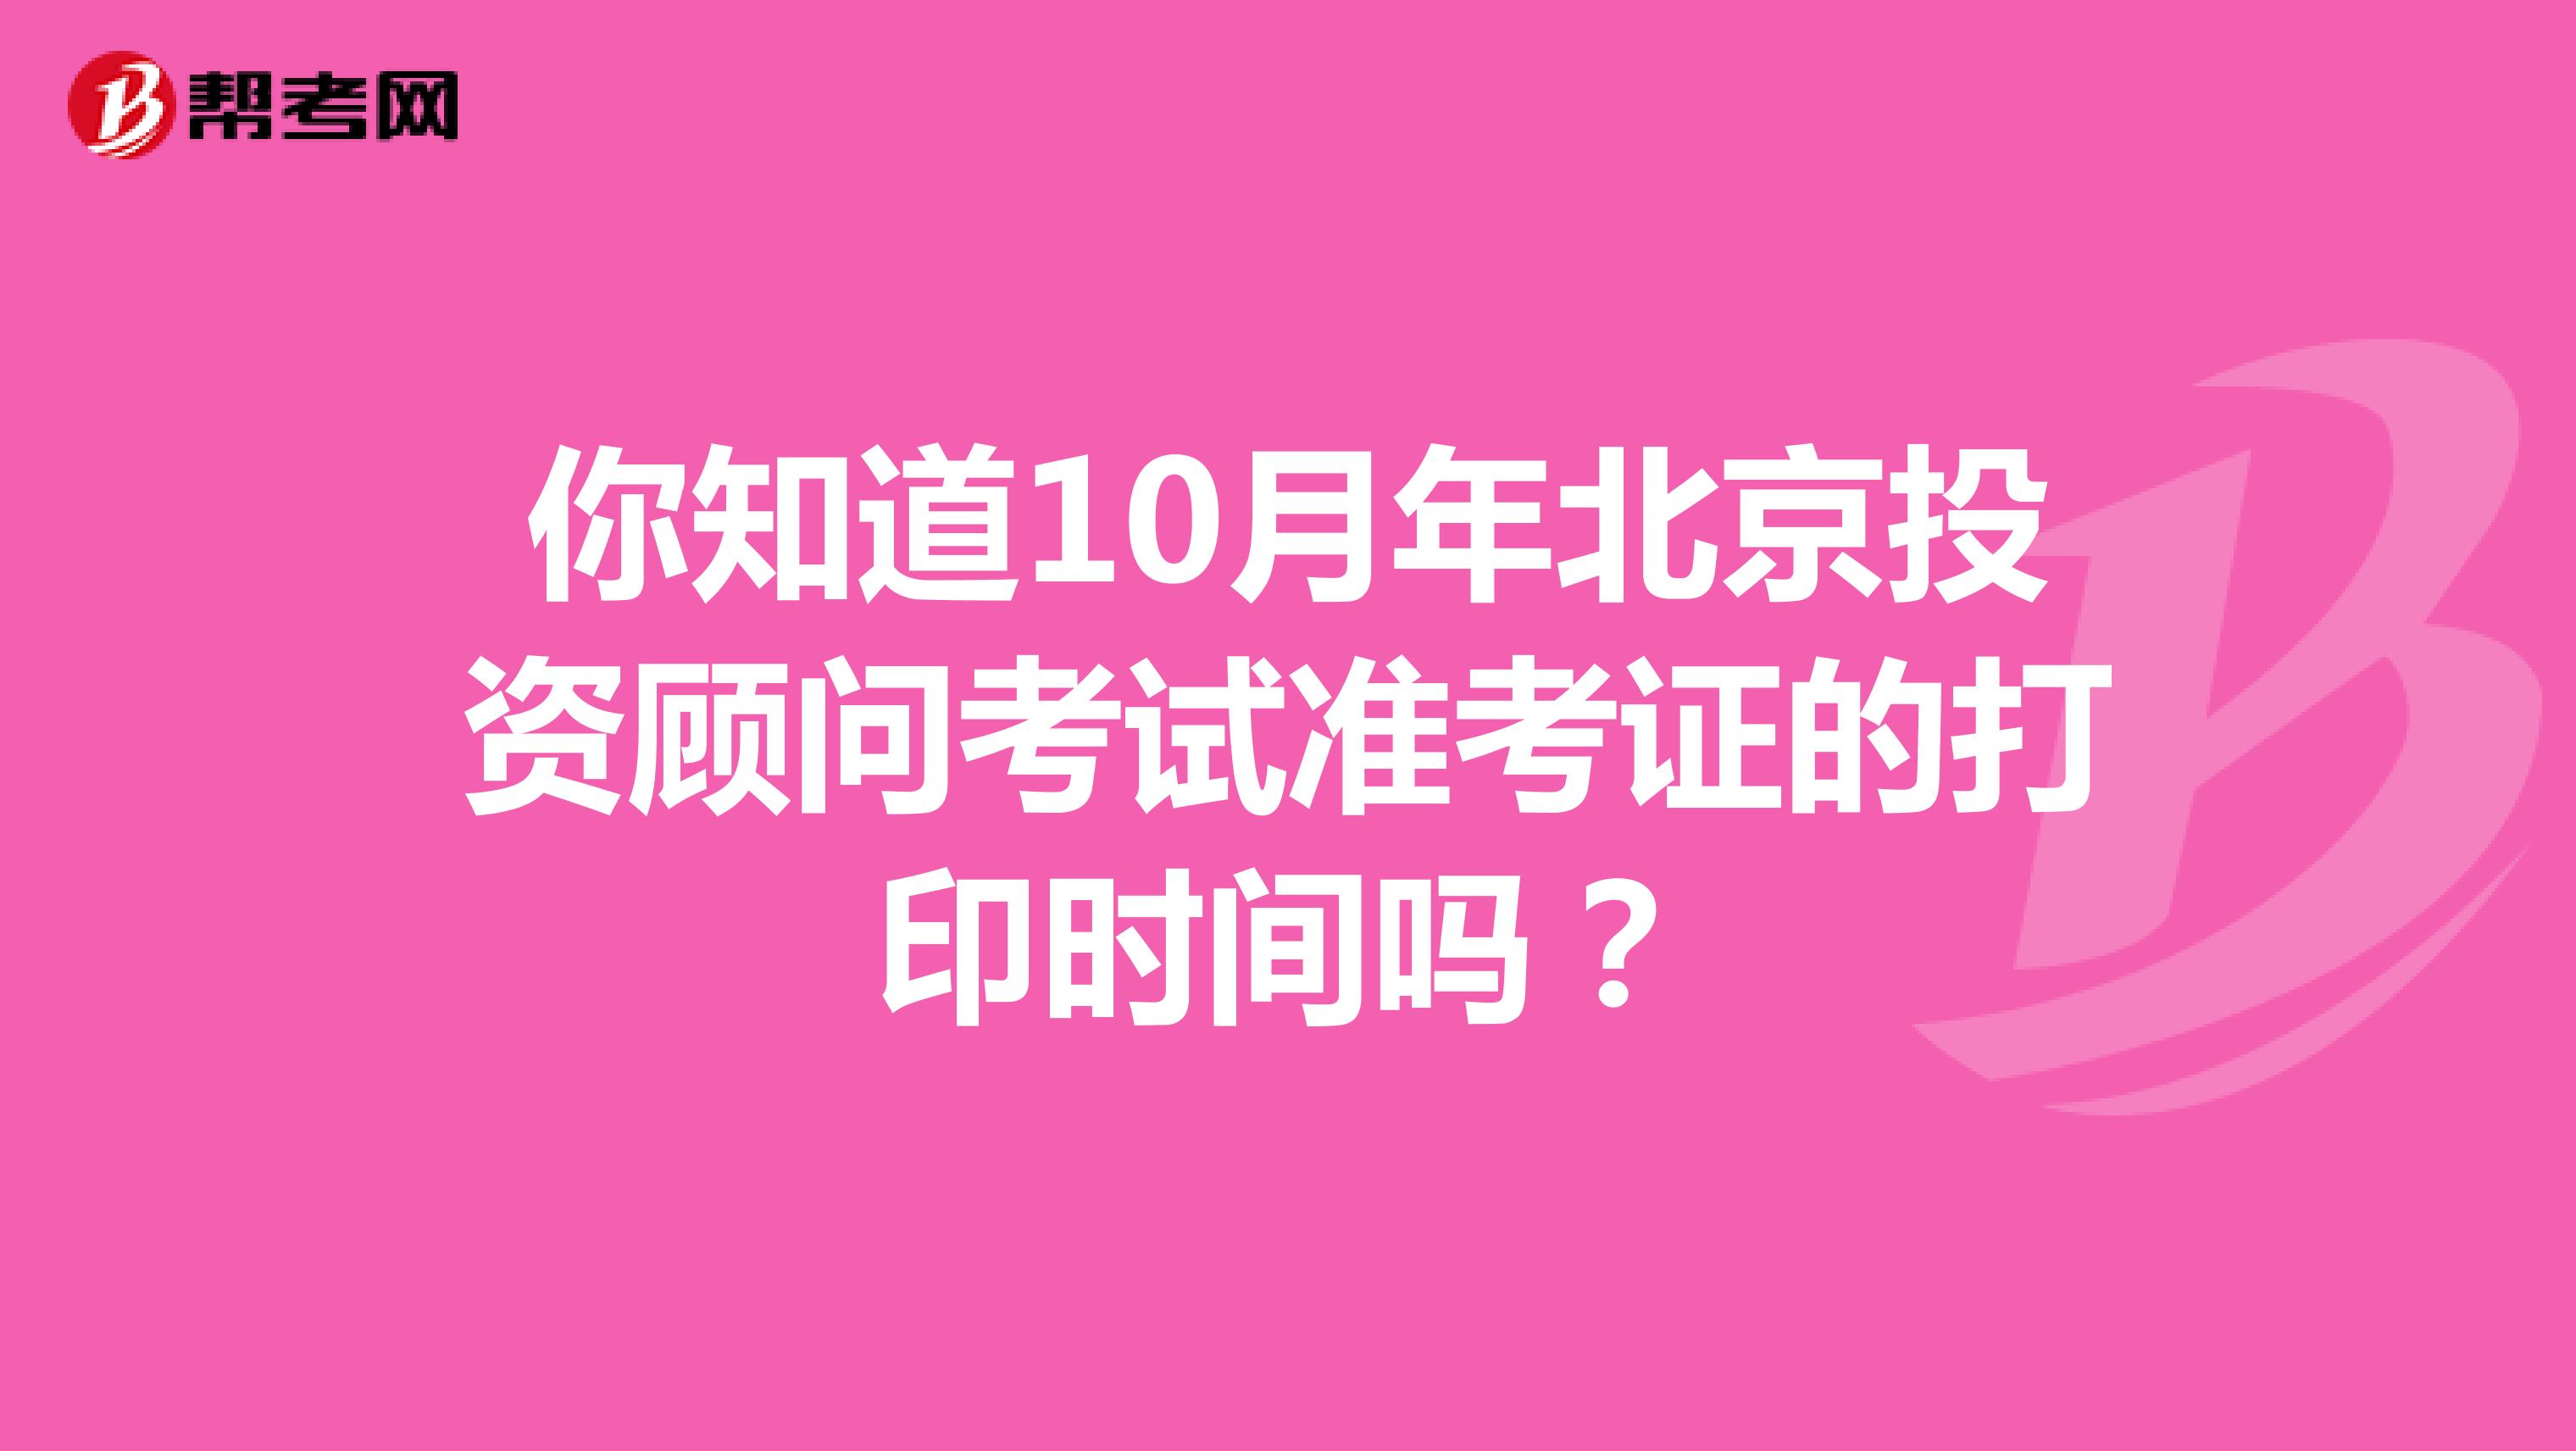 你知道10月年北京投資顧問考試準考證的打印時間嗎？